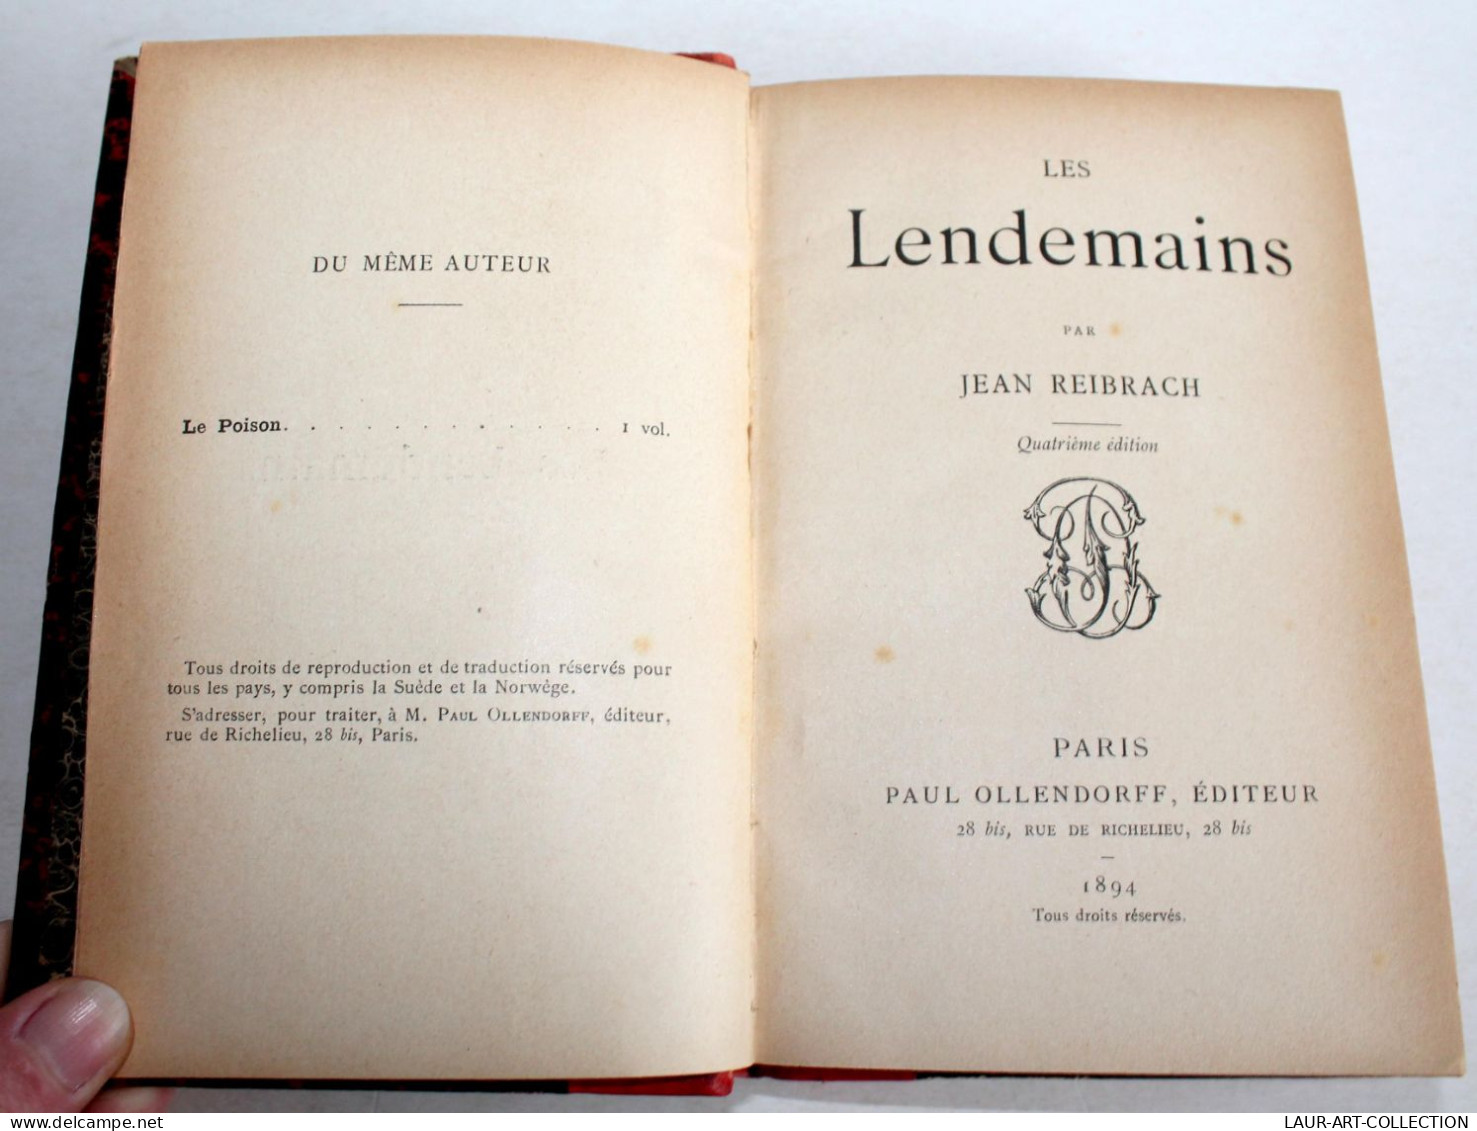 RARE! LES LENDEMAINS Par JEAN REIBRACH 4e EDITION 1894 OLLENDORFF EDITEUR / LIVRE ANCIEN XIXe SIECLE (2204.145) - 1801-1900